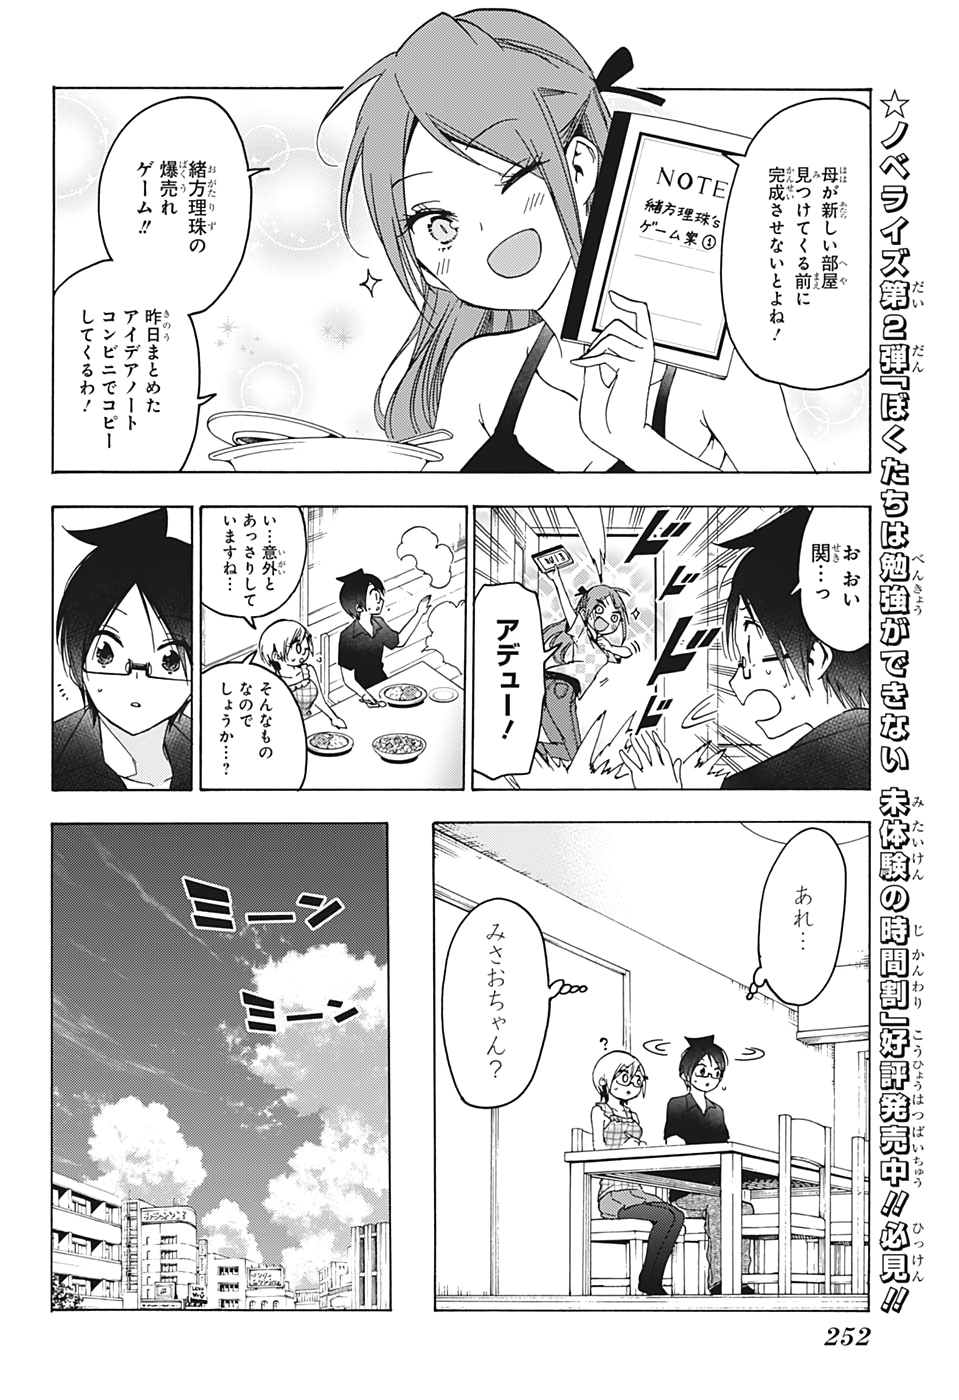 Bokutachi wa Benkyou ga Dekinai - Chapter 156 - Page 6